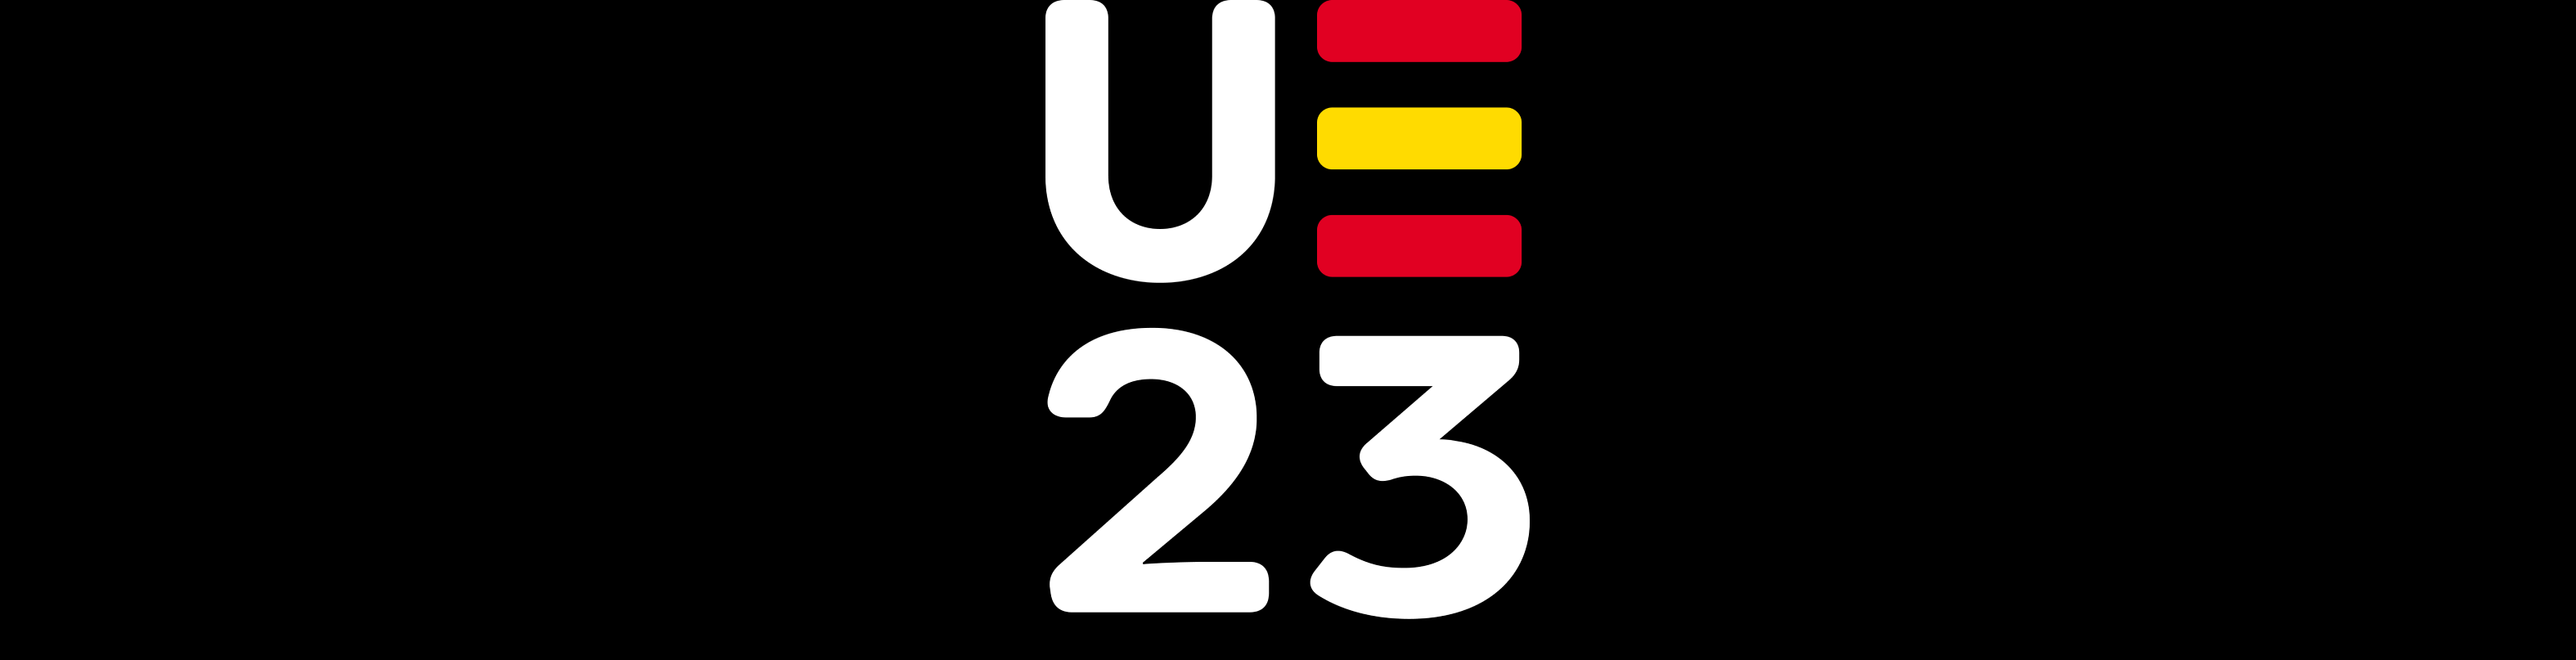 UE23